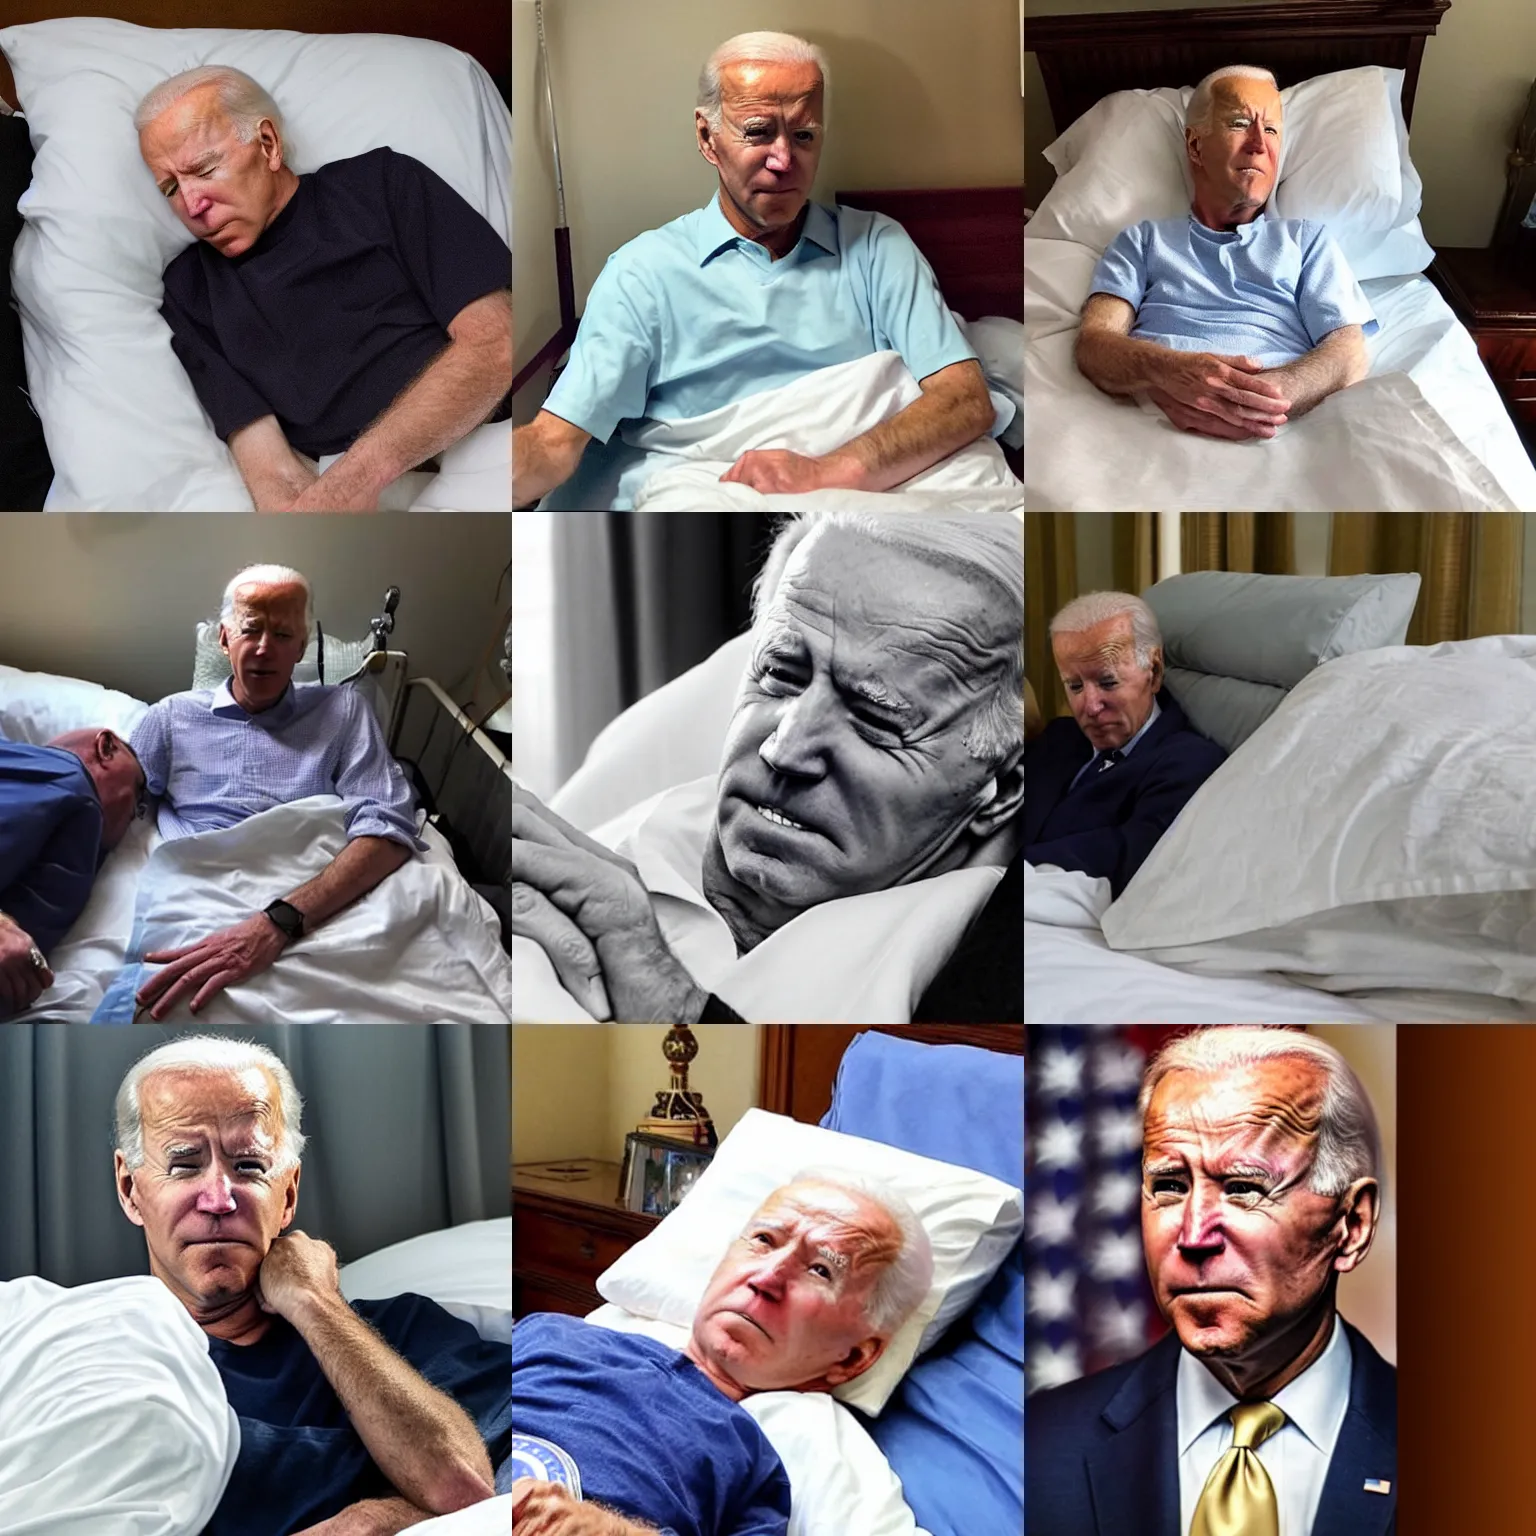 Prompt: photo of sad weak joe biden in hospice bed